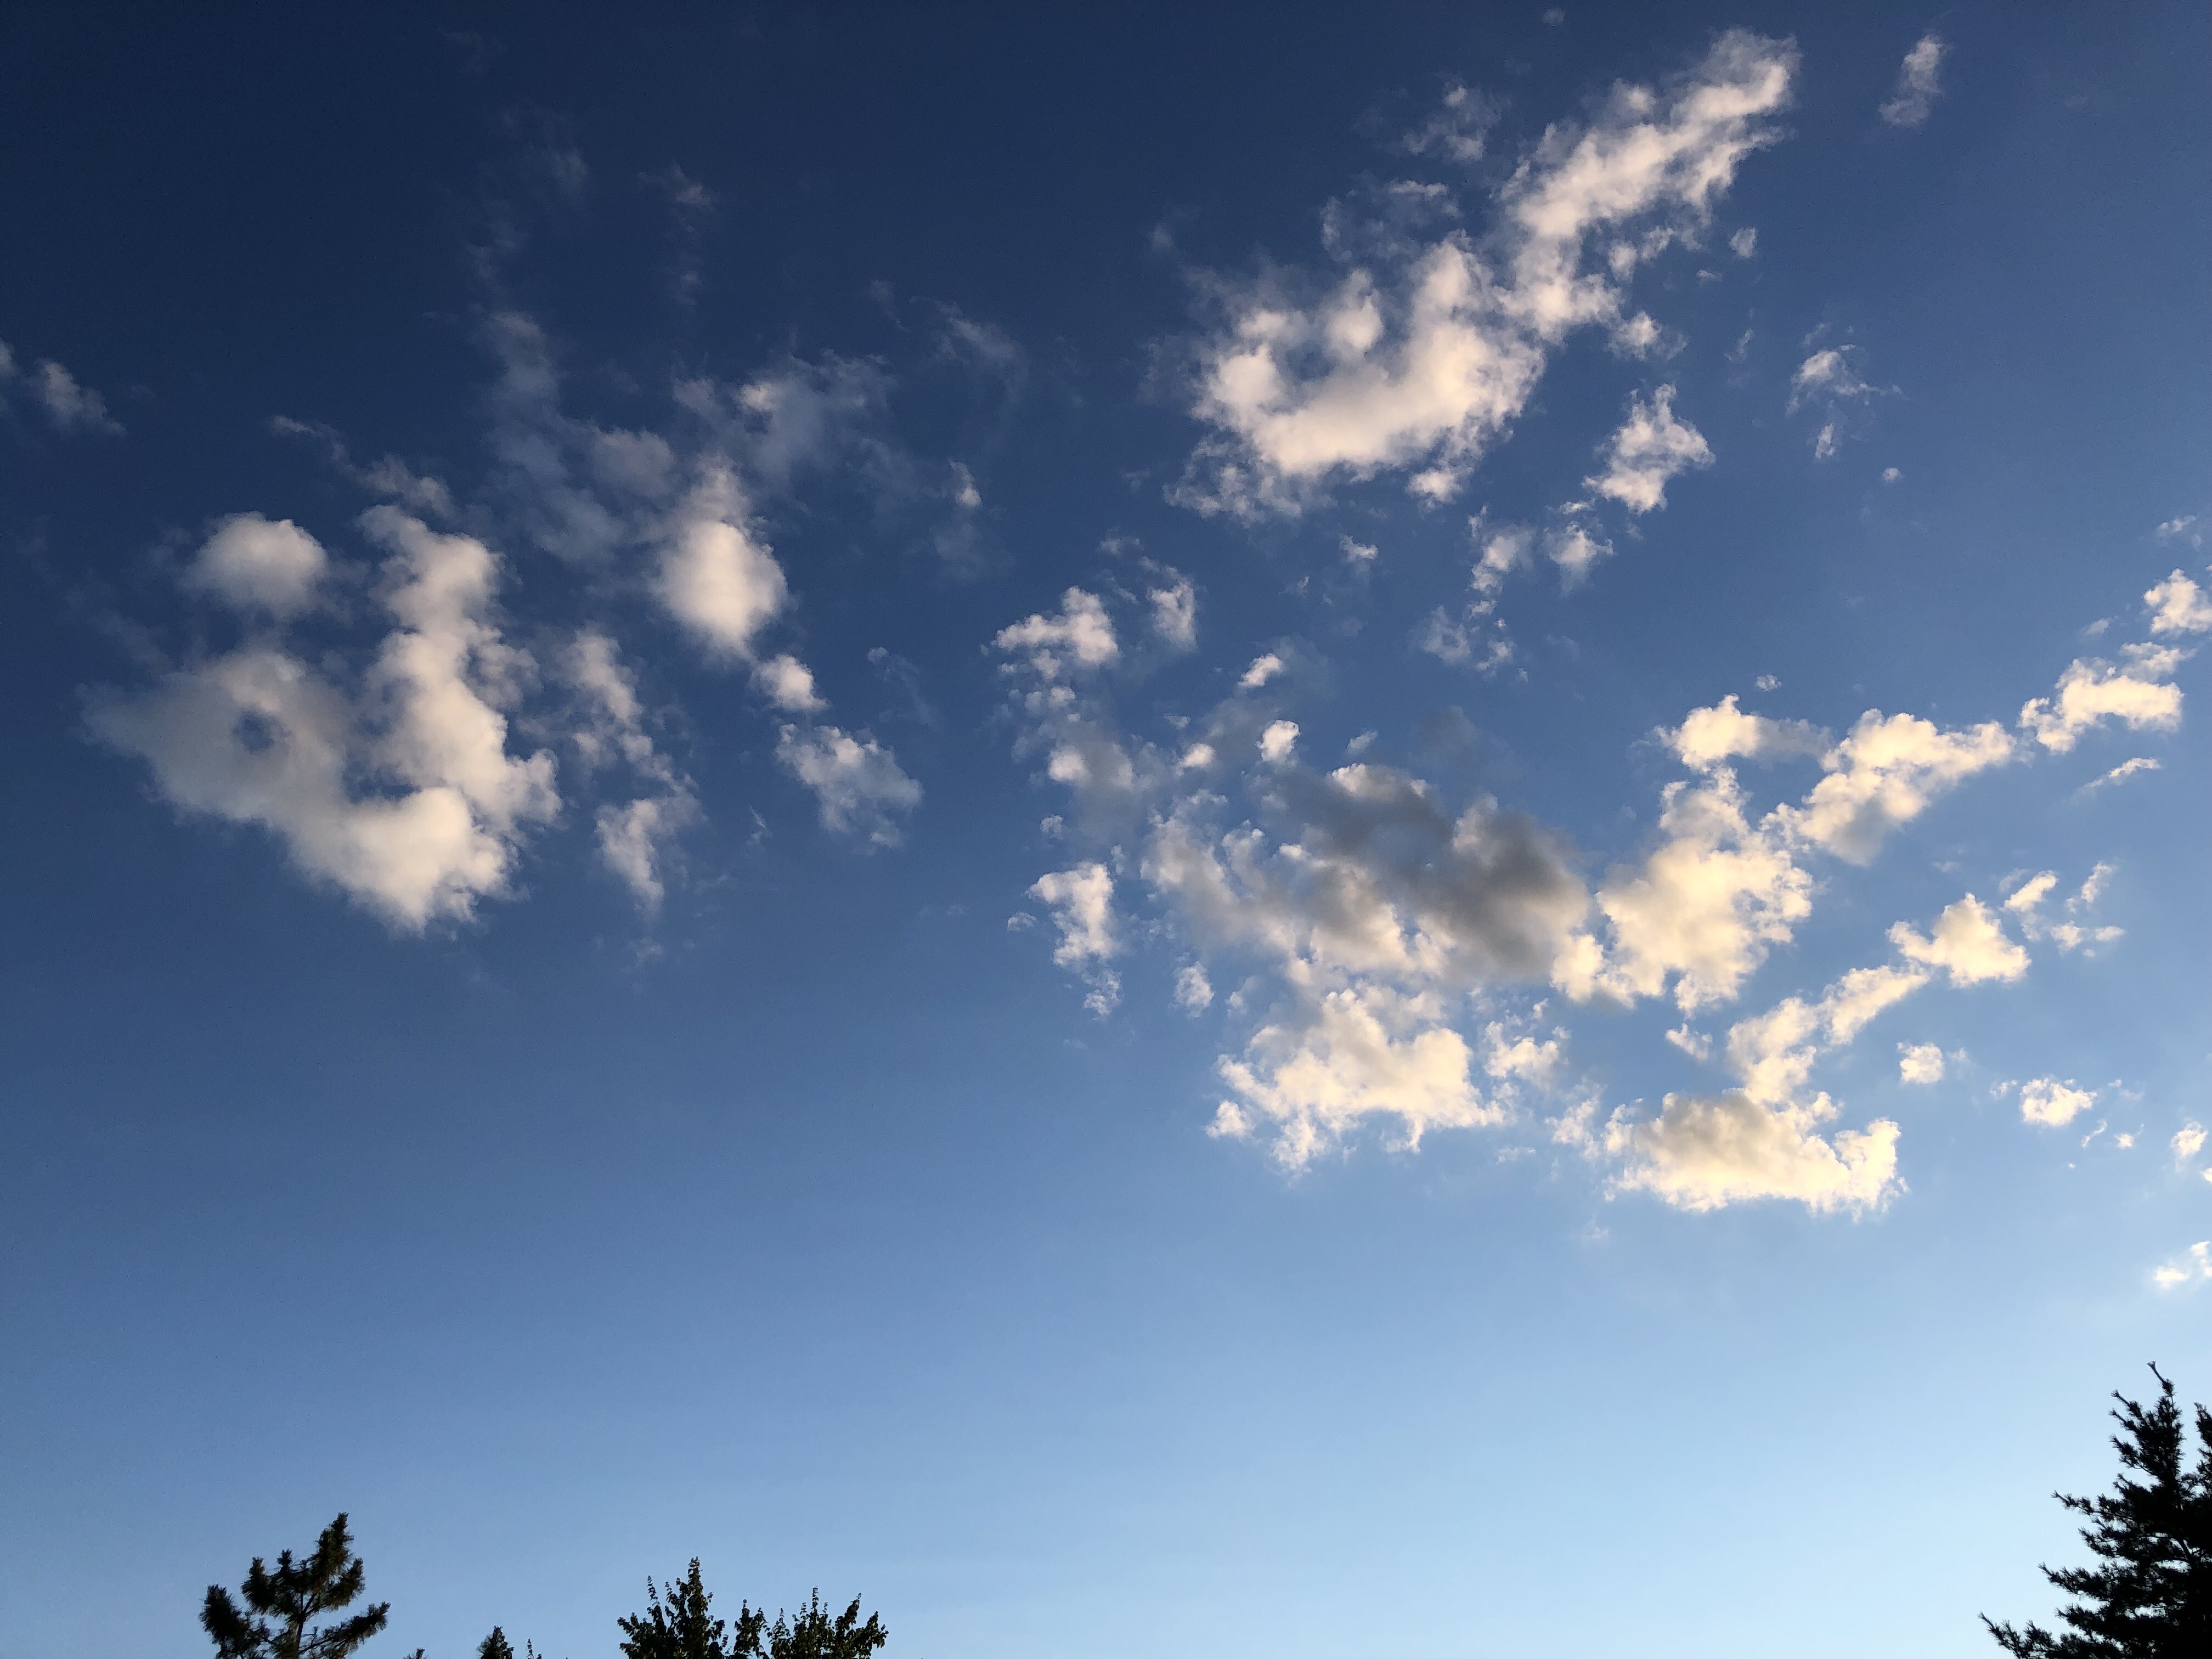 Nếu bạn muốn tìm kiếm một bầu trời hoàn hảo cho ảnh của mình, hãy xem Nền trời (789) của SportsCarFan129 trên DeviantArt! Sự kết hợp tuyệt vời giữa mây và nắng sẽ làm cho bức ảnh của bạn trở nên sống động hơn bao giờ hết.